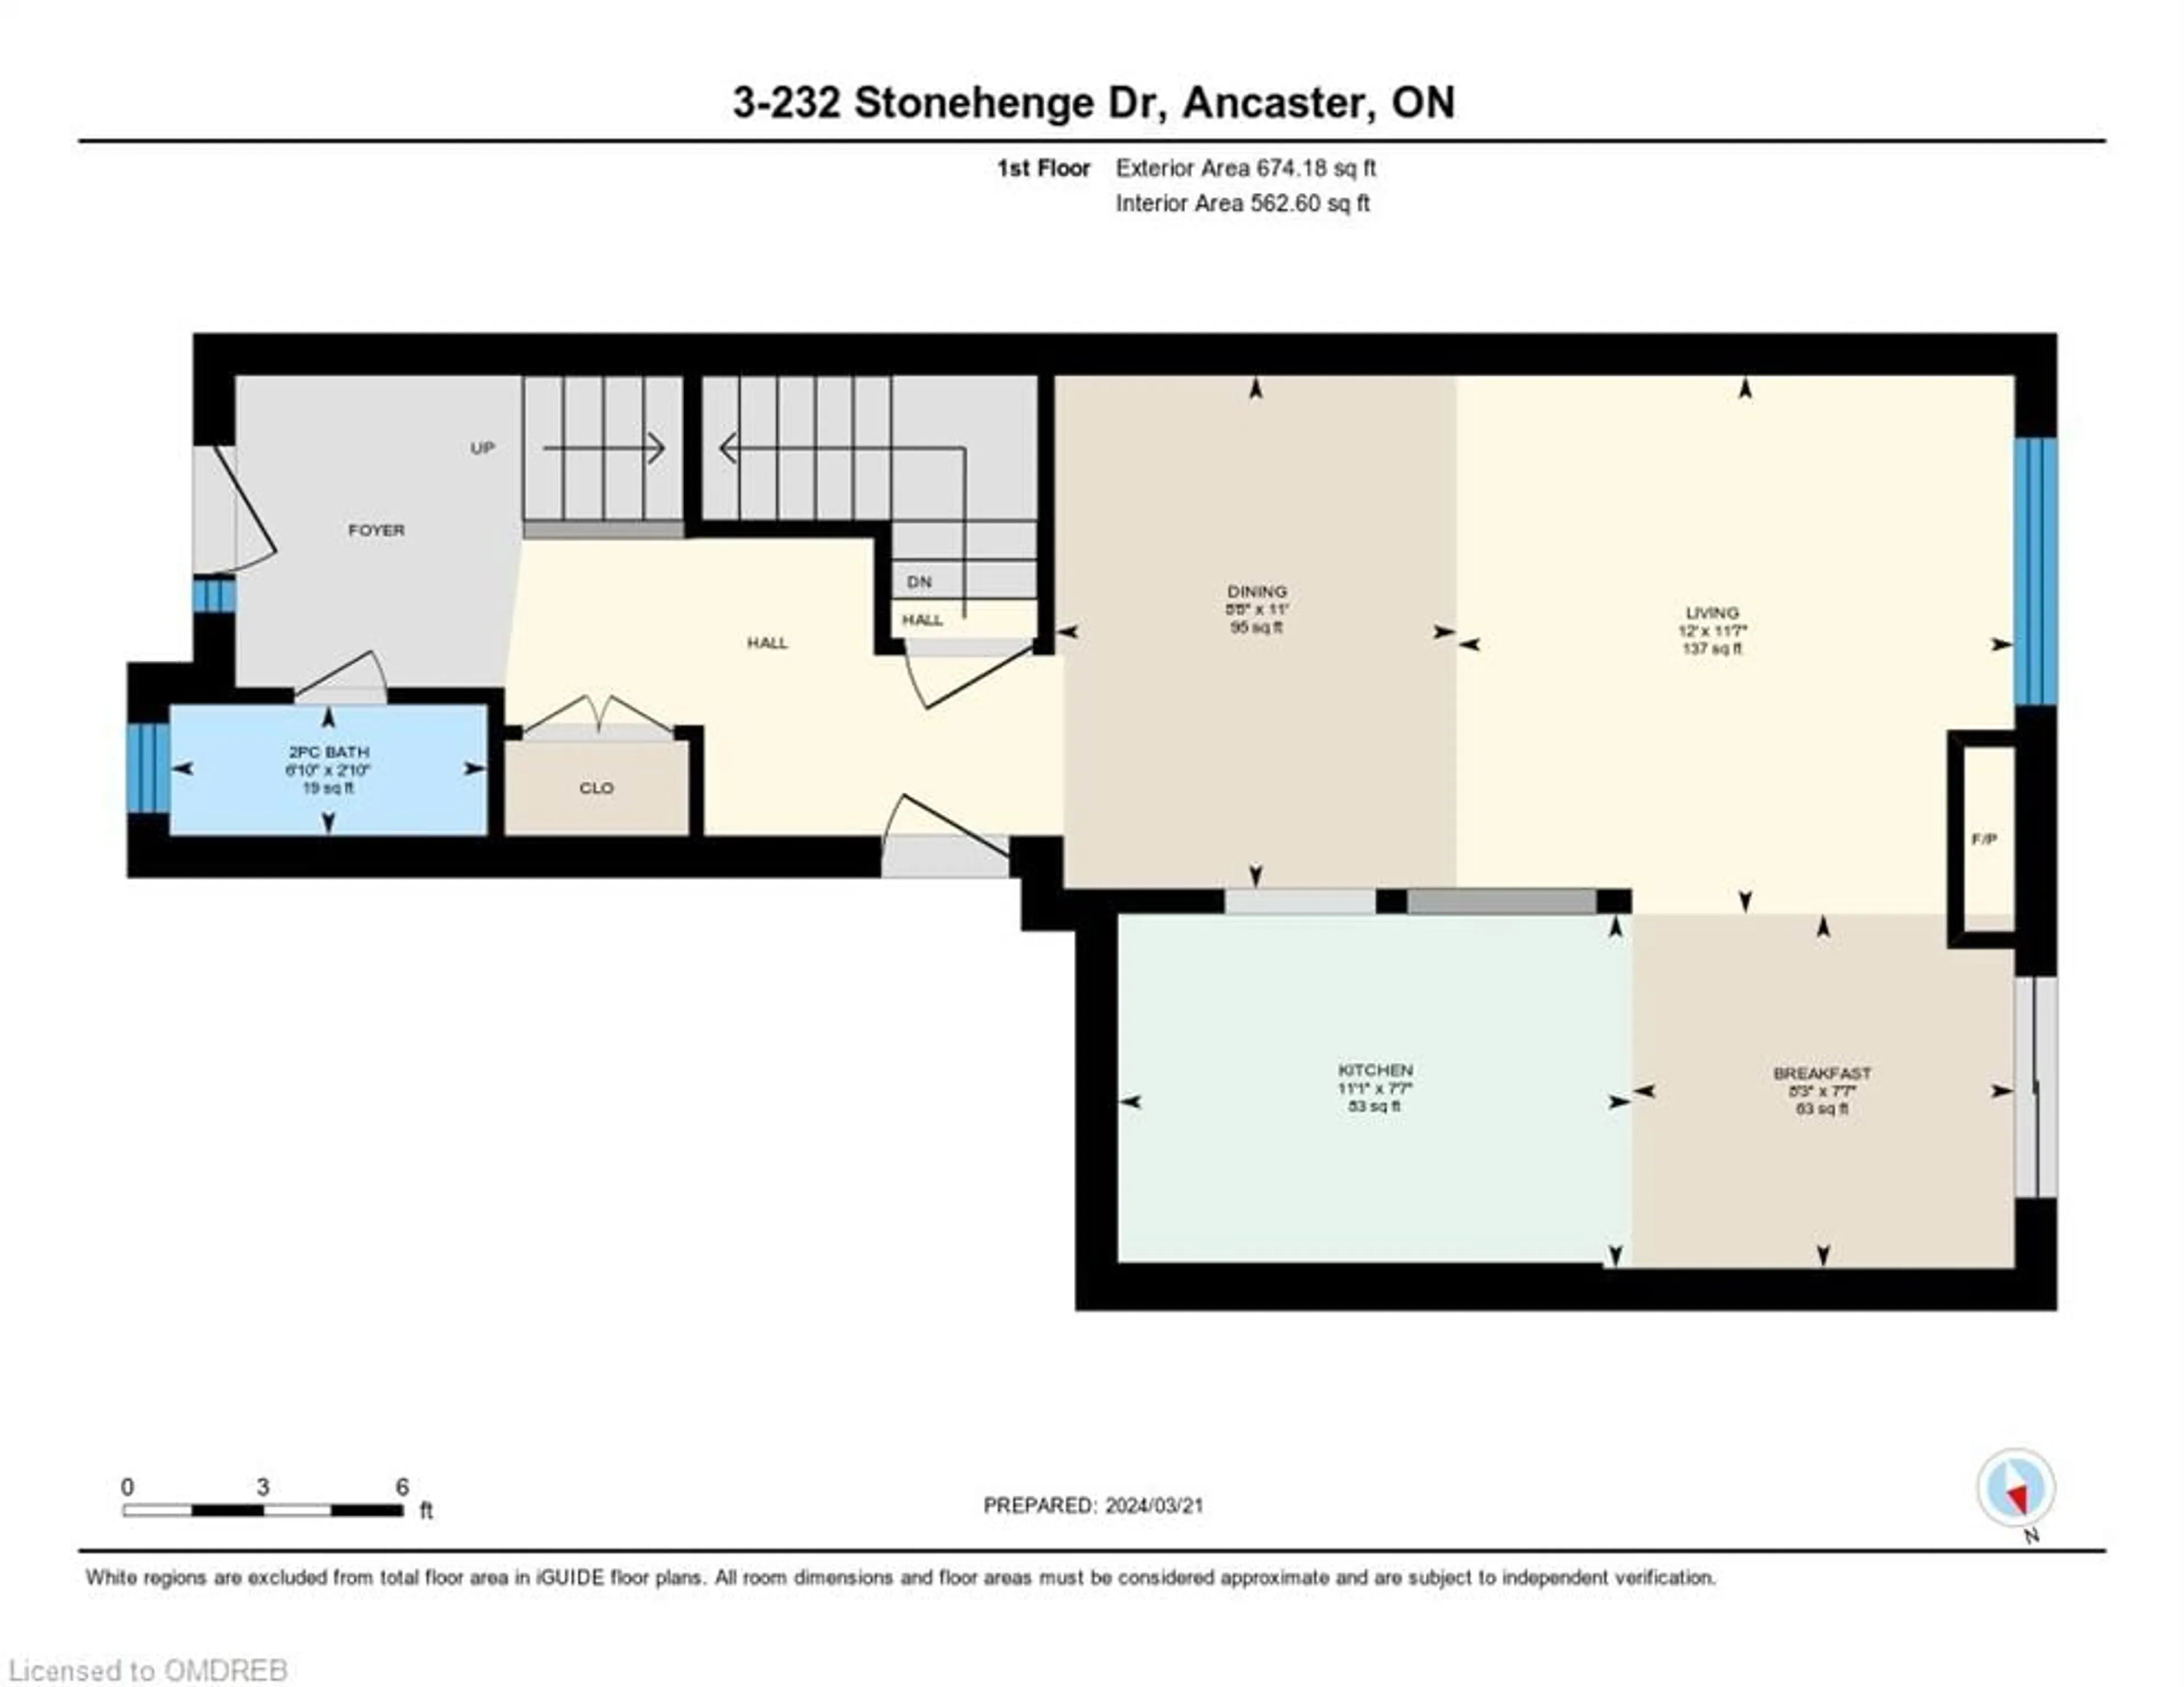 Floor plan for 232 Stonehenge Dr #3, Ancaster Ontario L9K 1R5